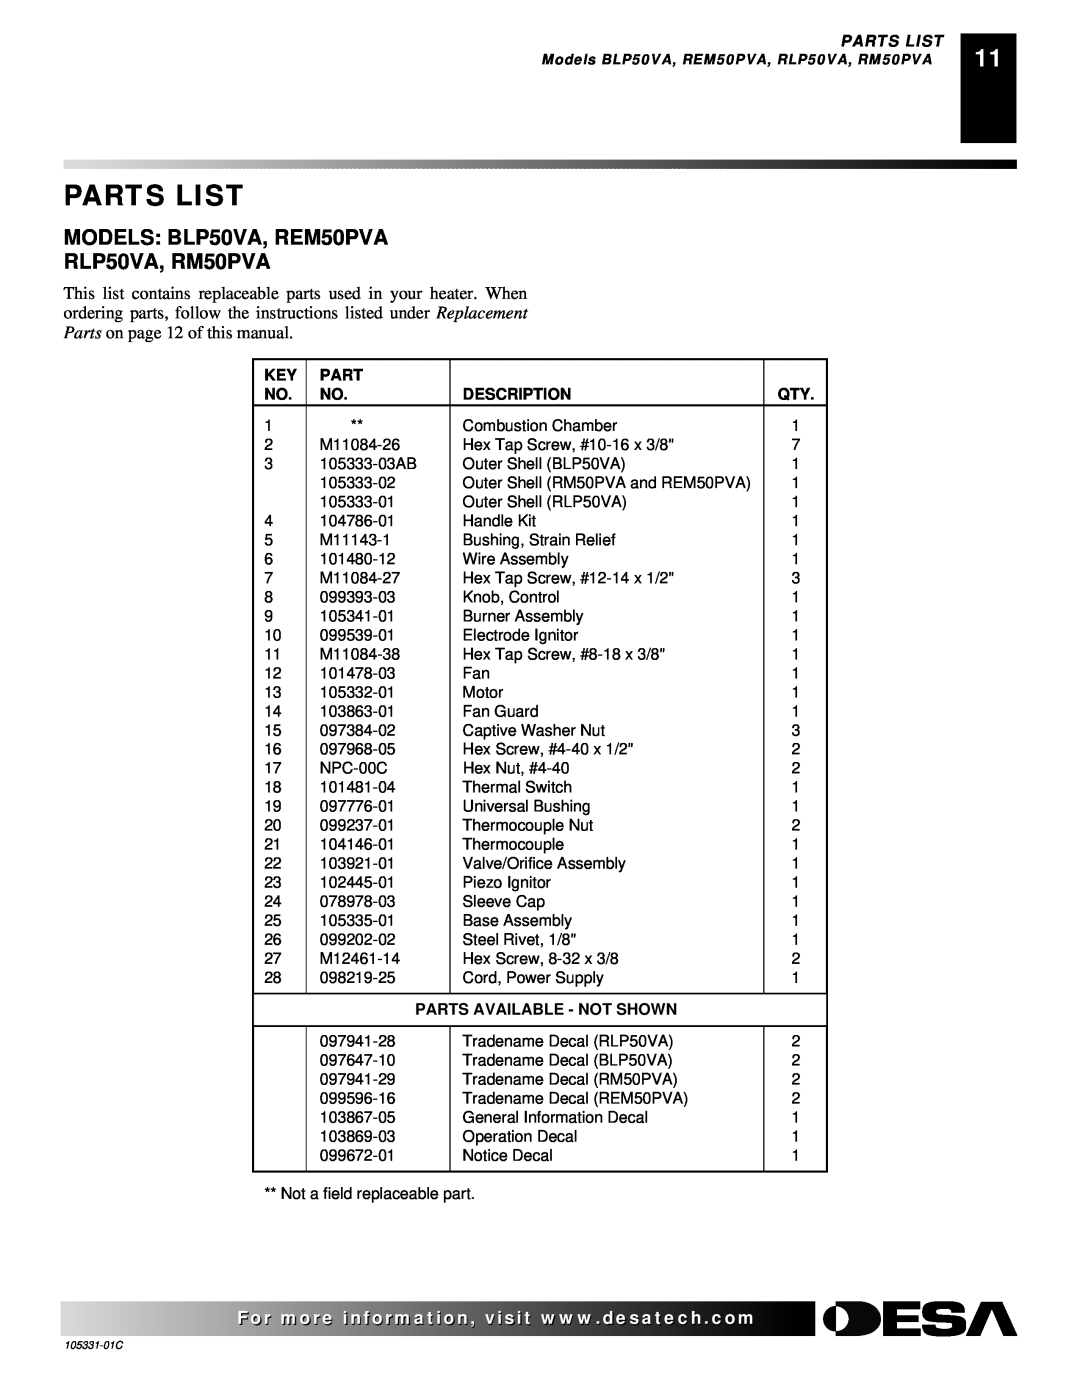 Desa ROPANE CONSTRUCTION HEATER owner manual Parts List, Description, Parts Available - Not Shown 